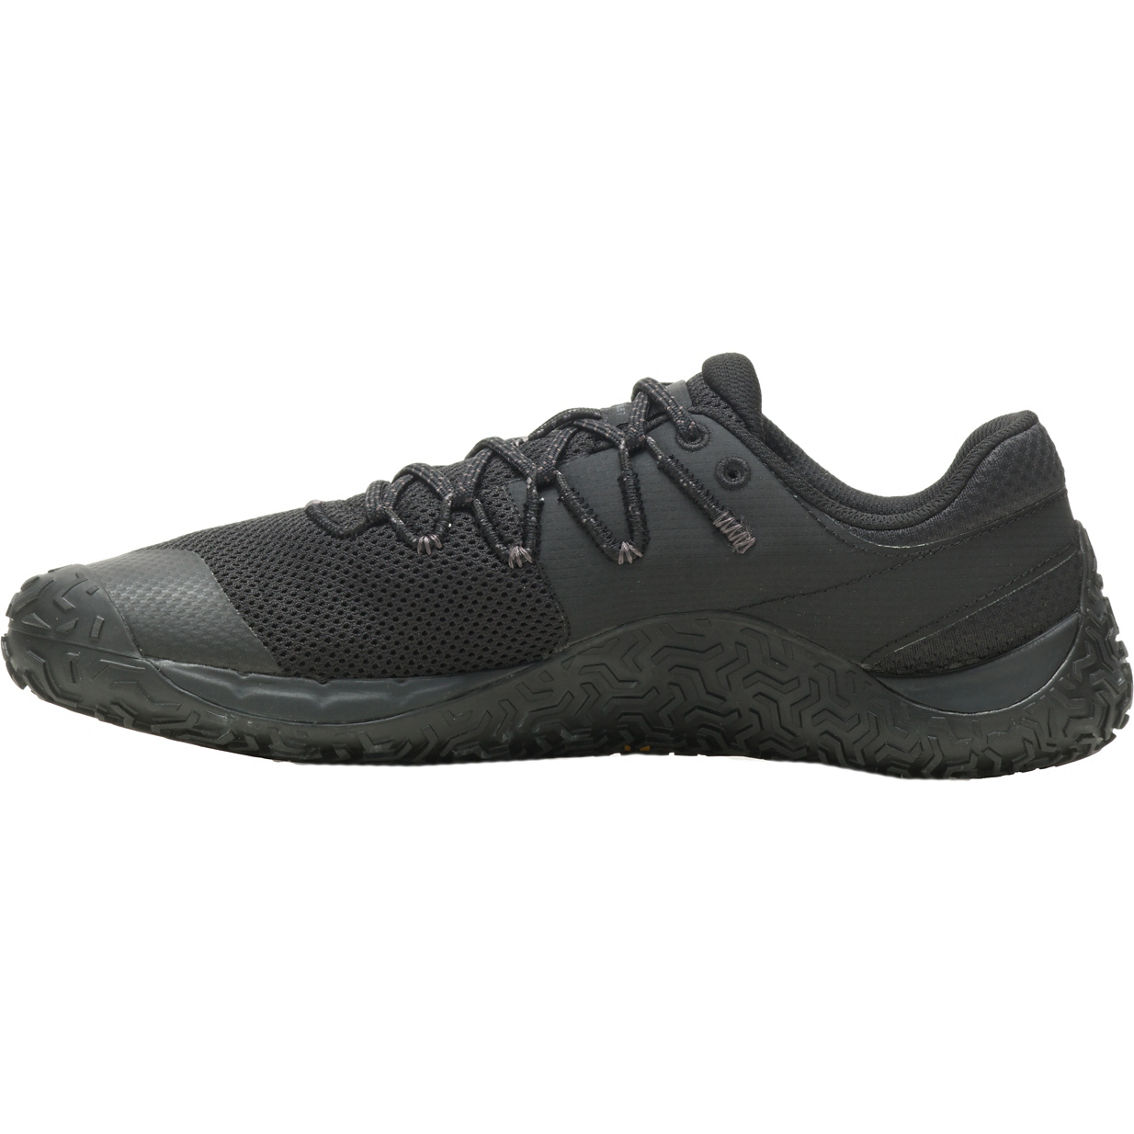 Merrell Men's Trail Glove 7 Shoes | Men's Athletic Shoes | Shoes | Shop ...